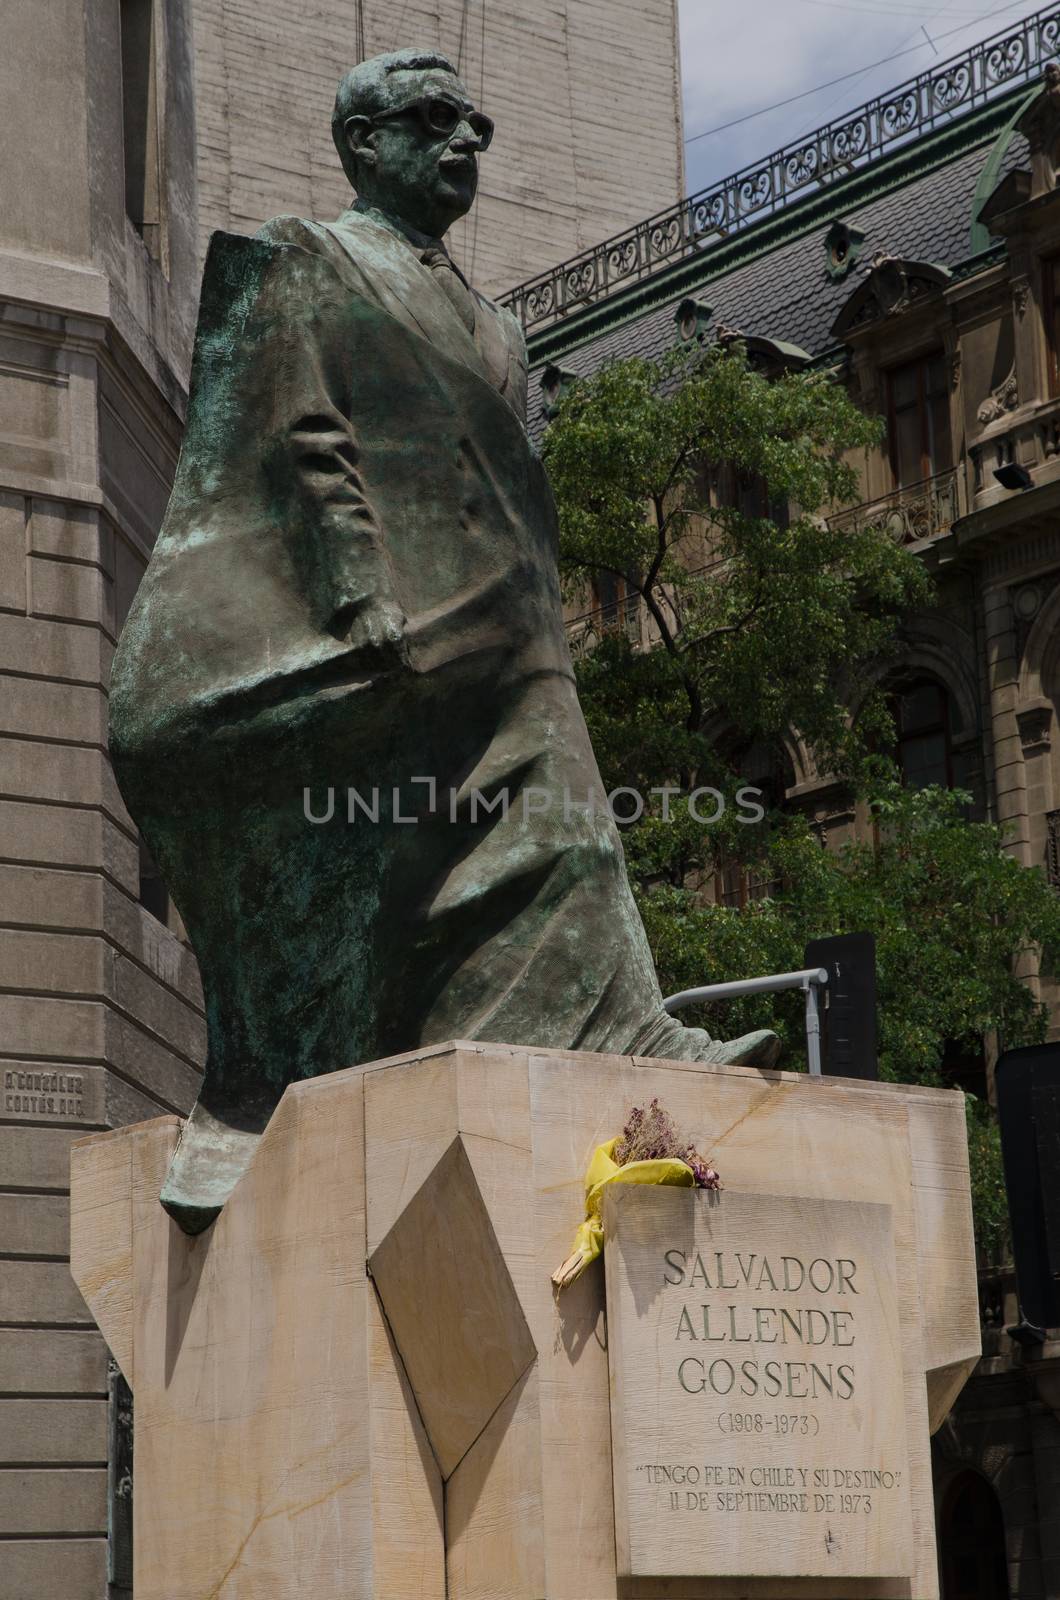 The Constitucion Square. Santiago de Chile. Chile. January 15, 2012: statue of Salvador Allende, former president of Chile.